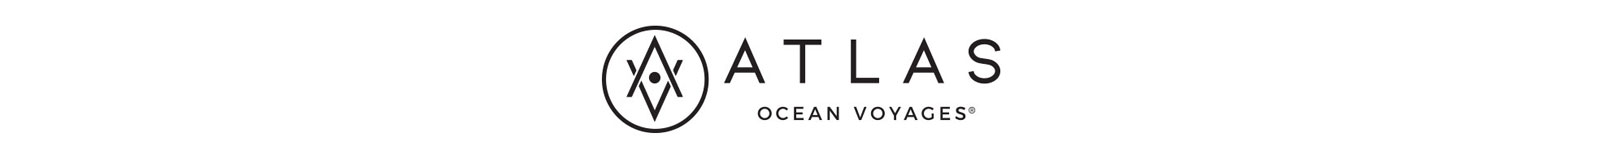 Atlas Ocean Voyages - Travel Leaders Network